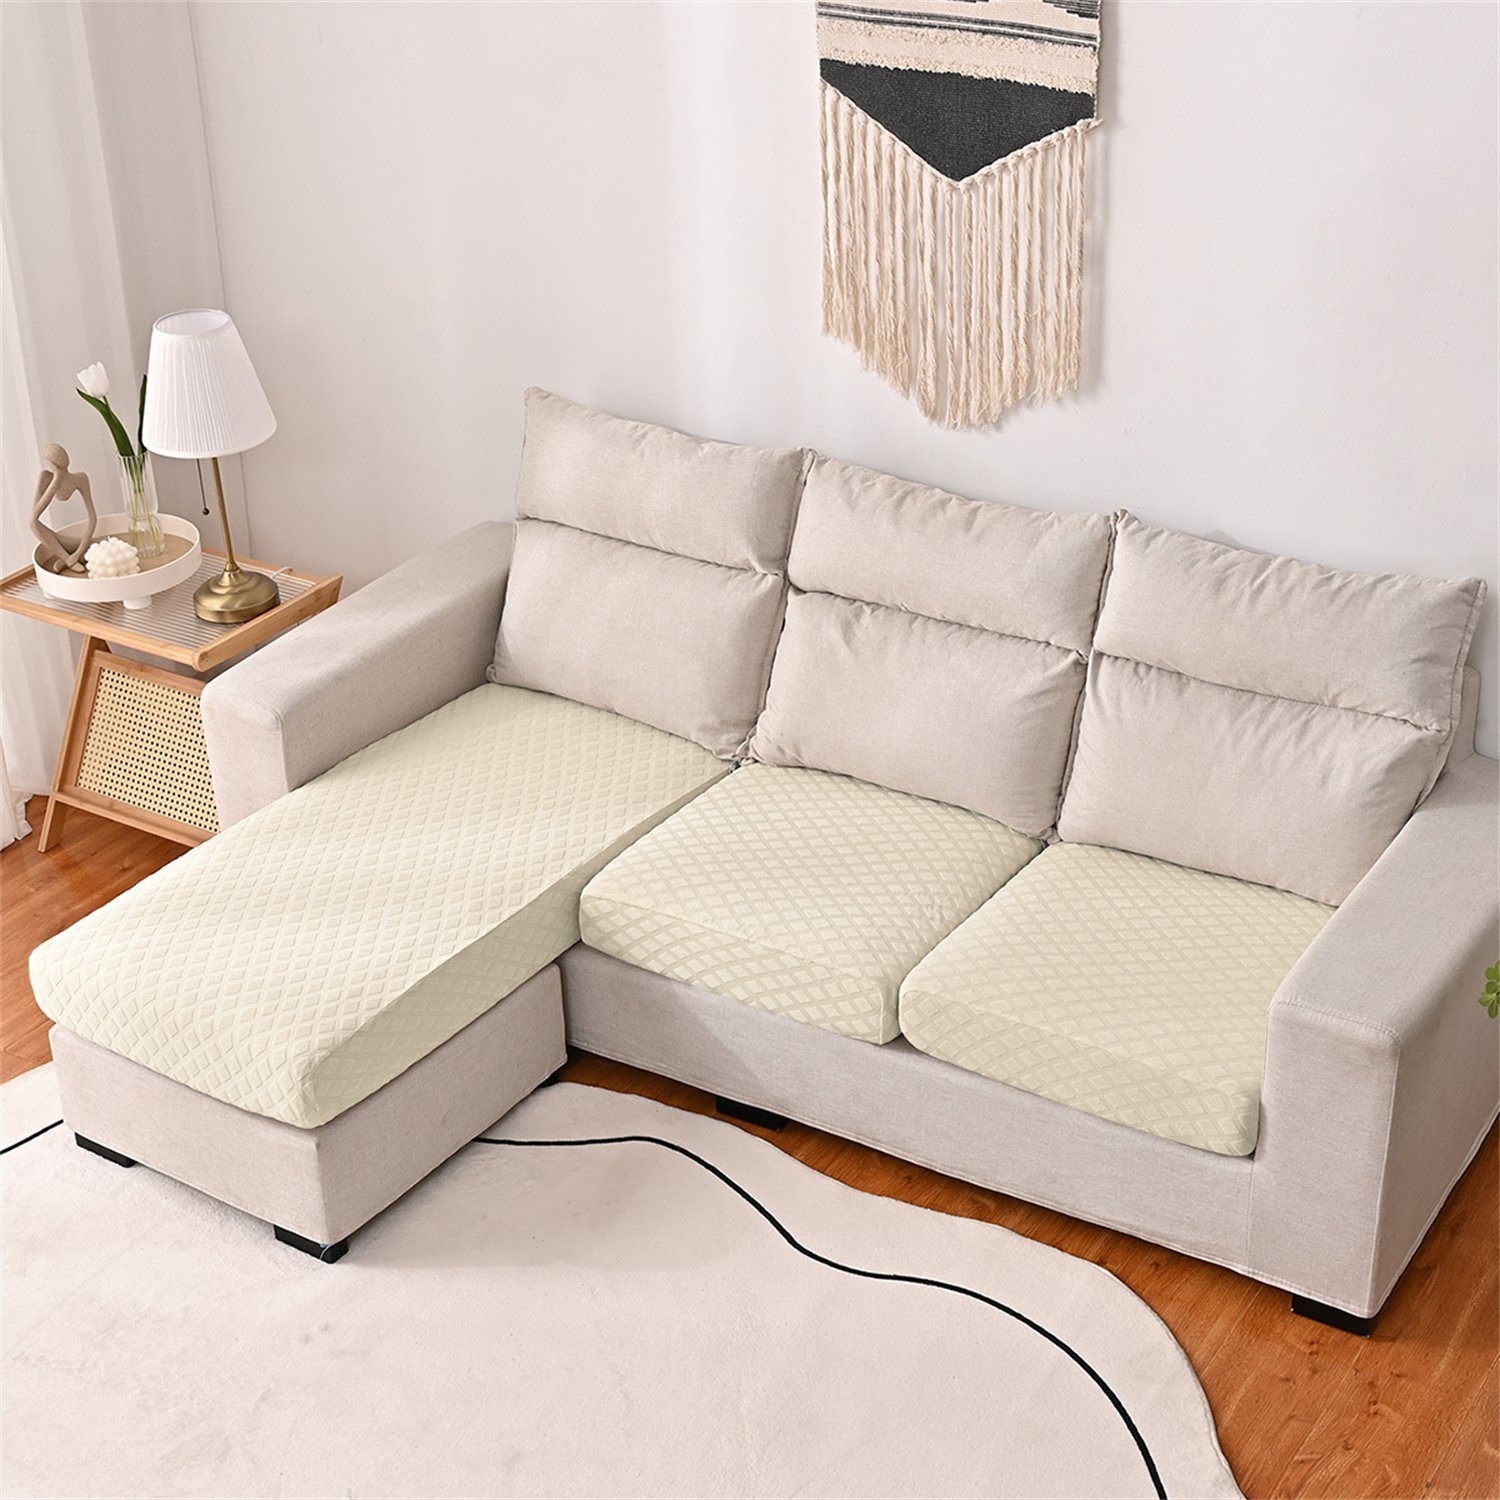 Sofa-Sitzbezug elastischer Sofahusse, Beige wasserfest HOMEIDEAS, 3DMuster mit